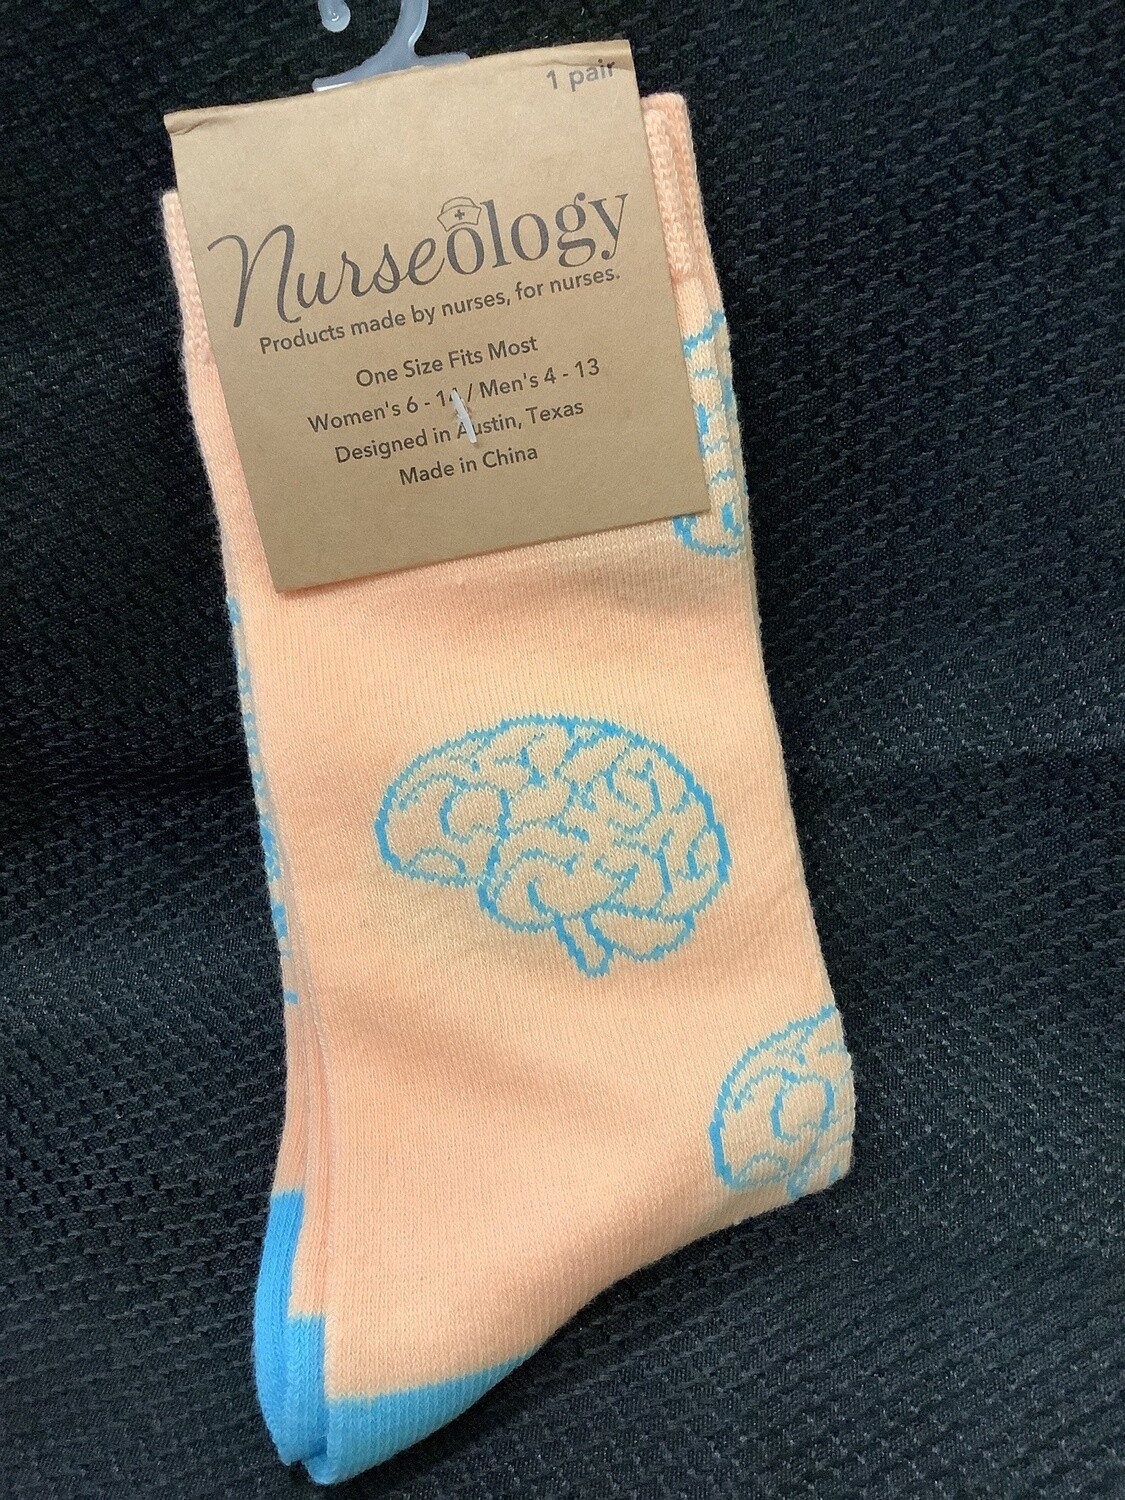 Nurseology Socks